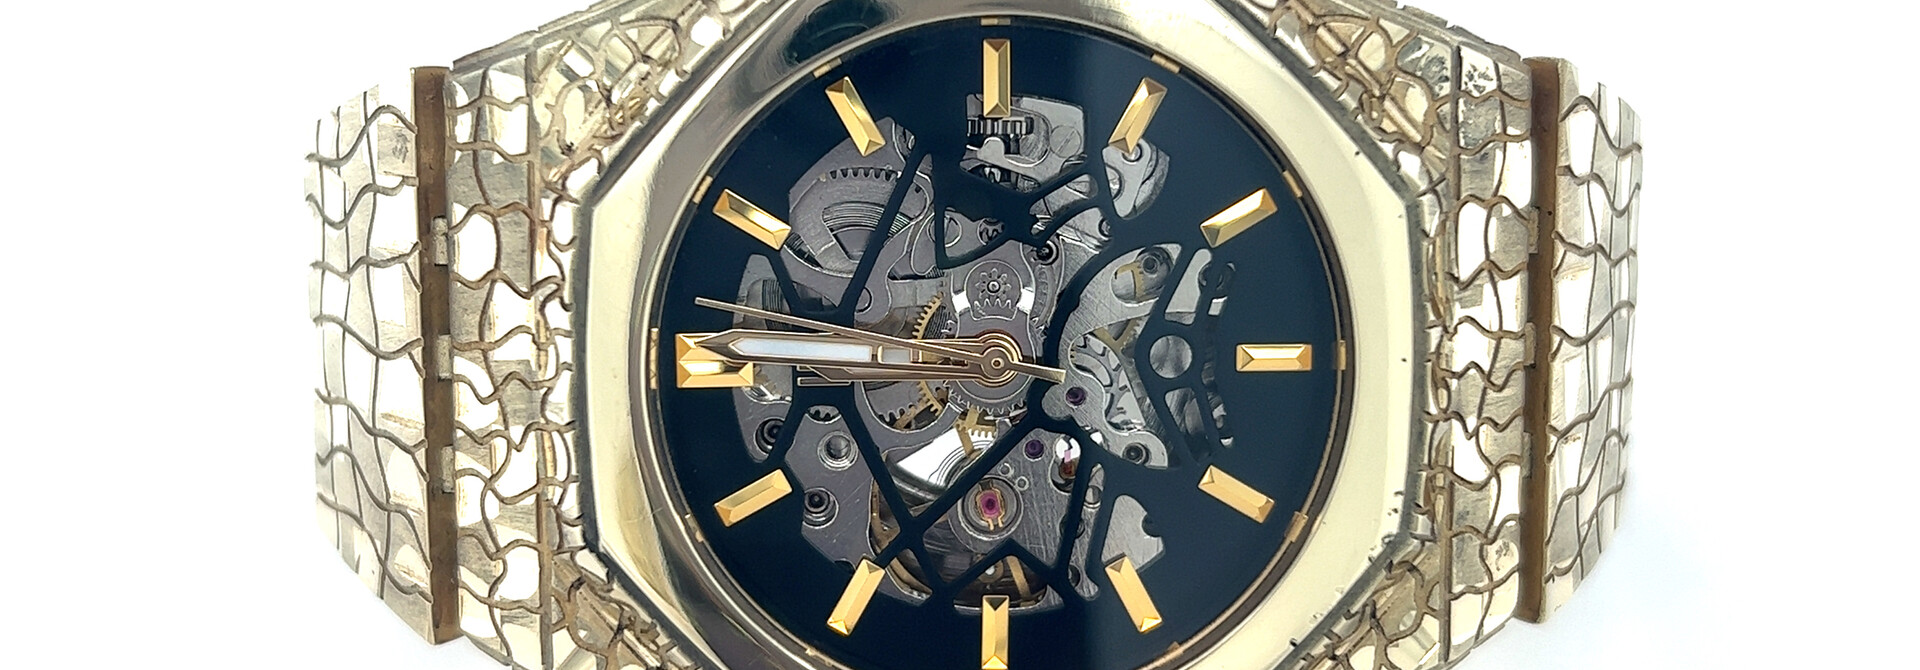 Horloge Piet Piet handgemaakt DGWatch